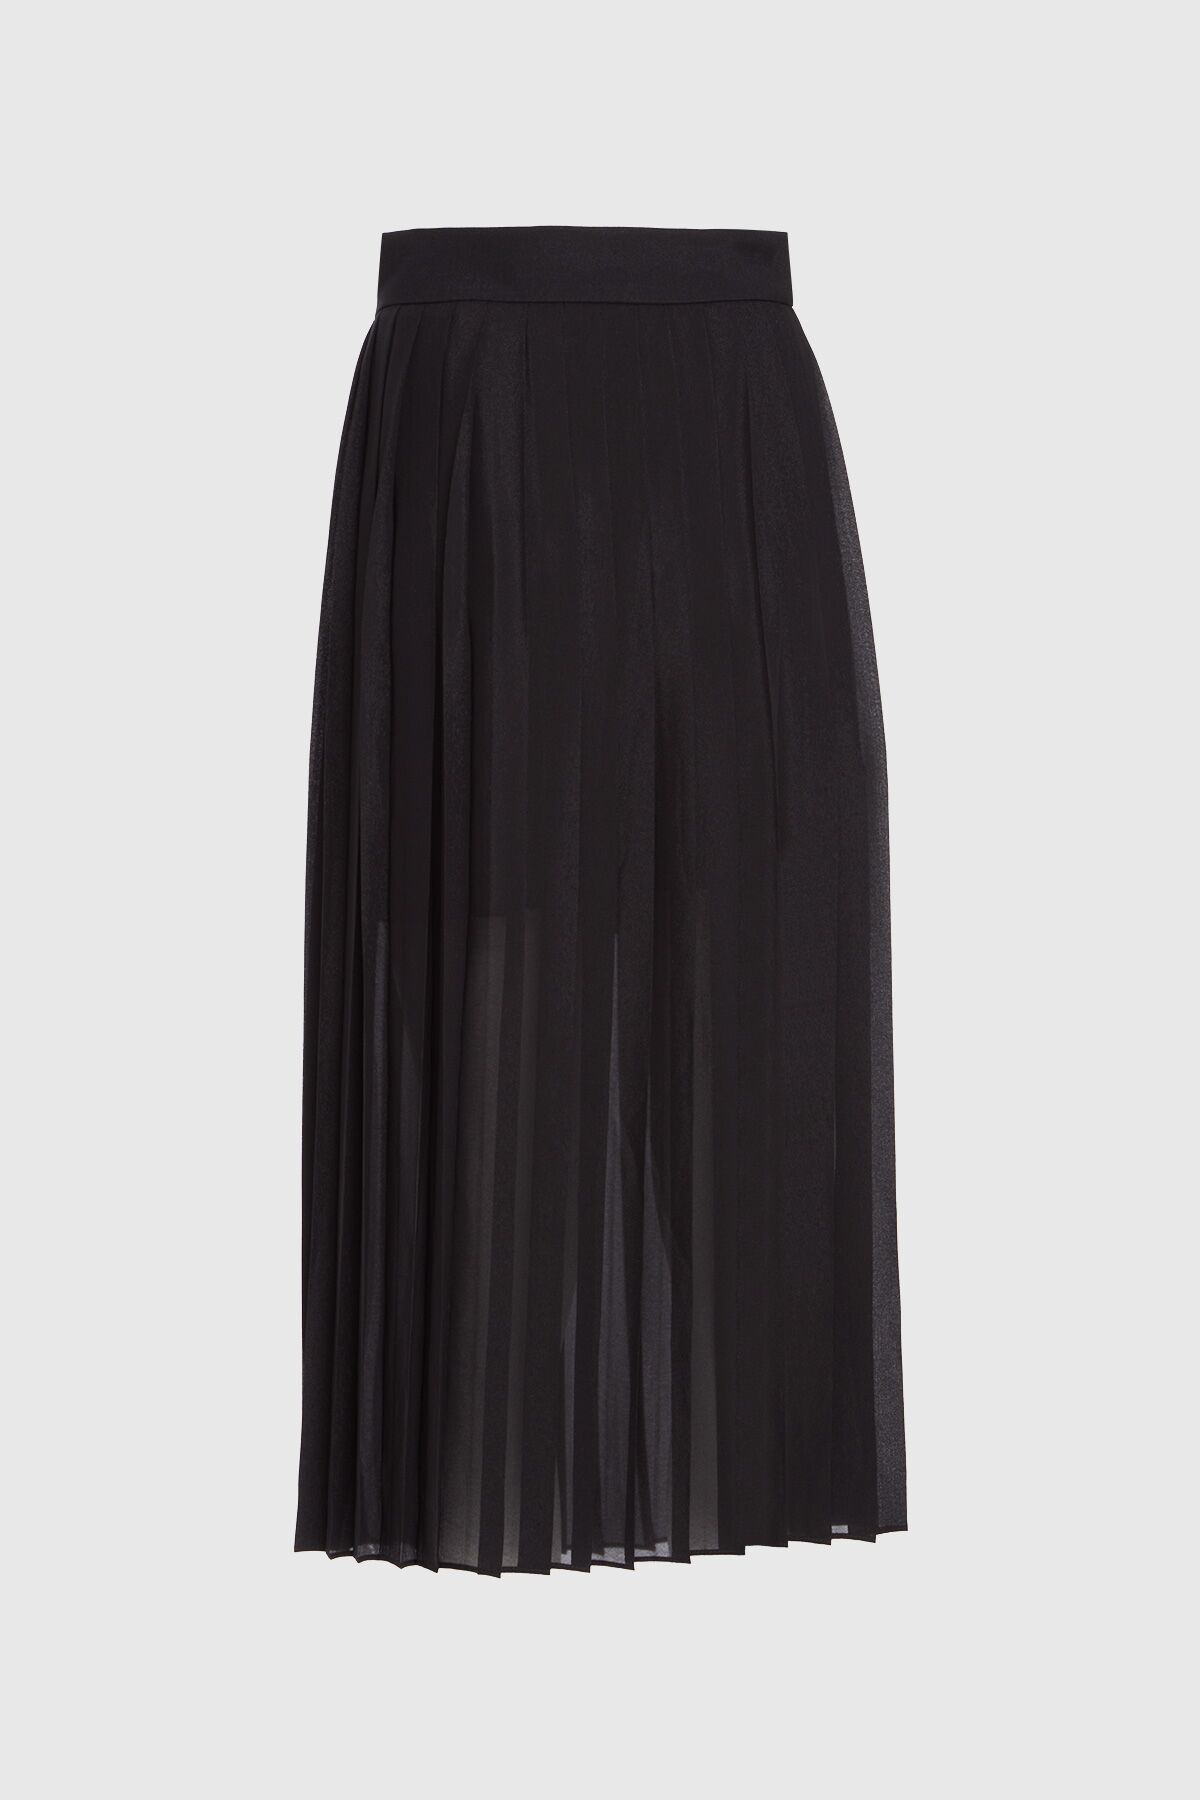 KIWE - Pleated Black Midi Skirt